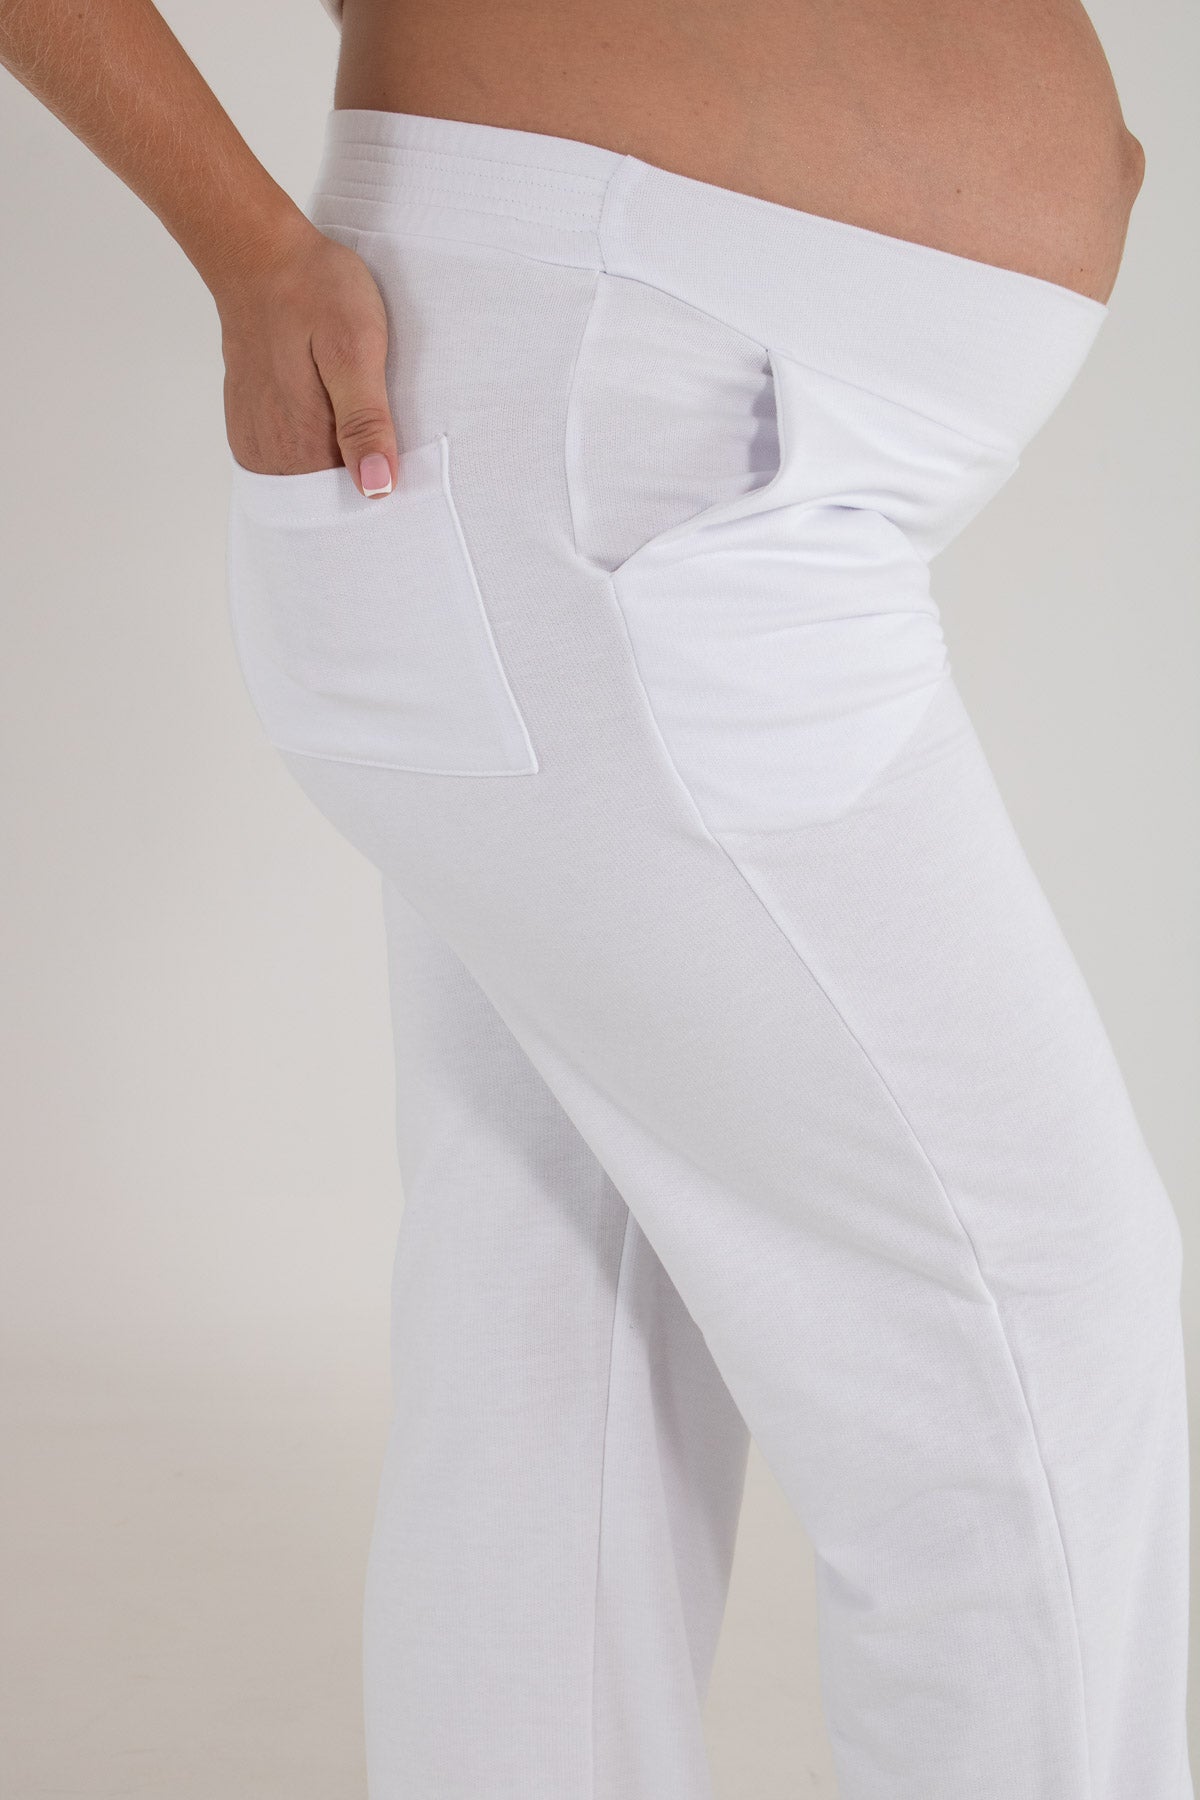 Pantalon Rosario blanco